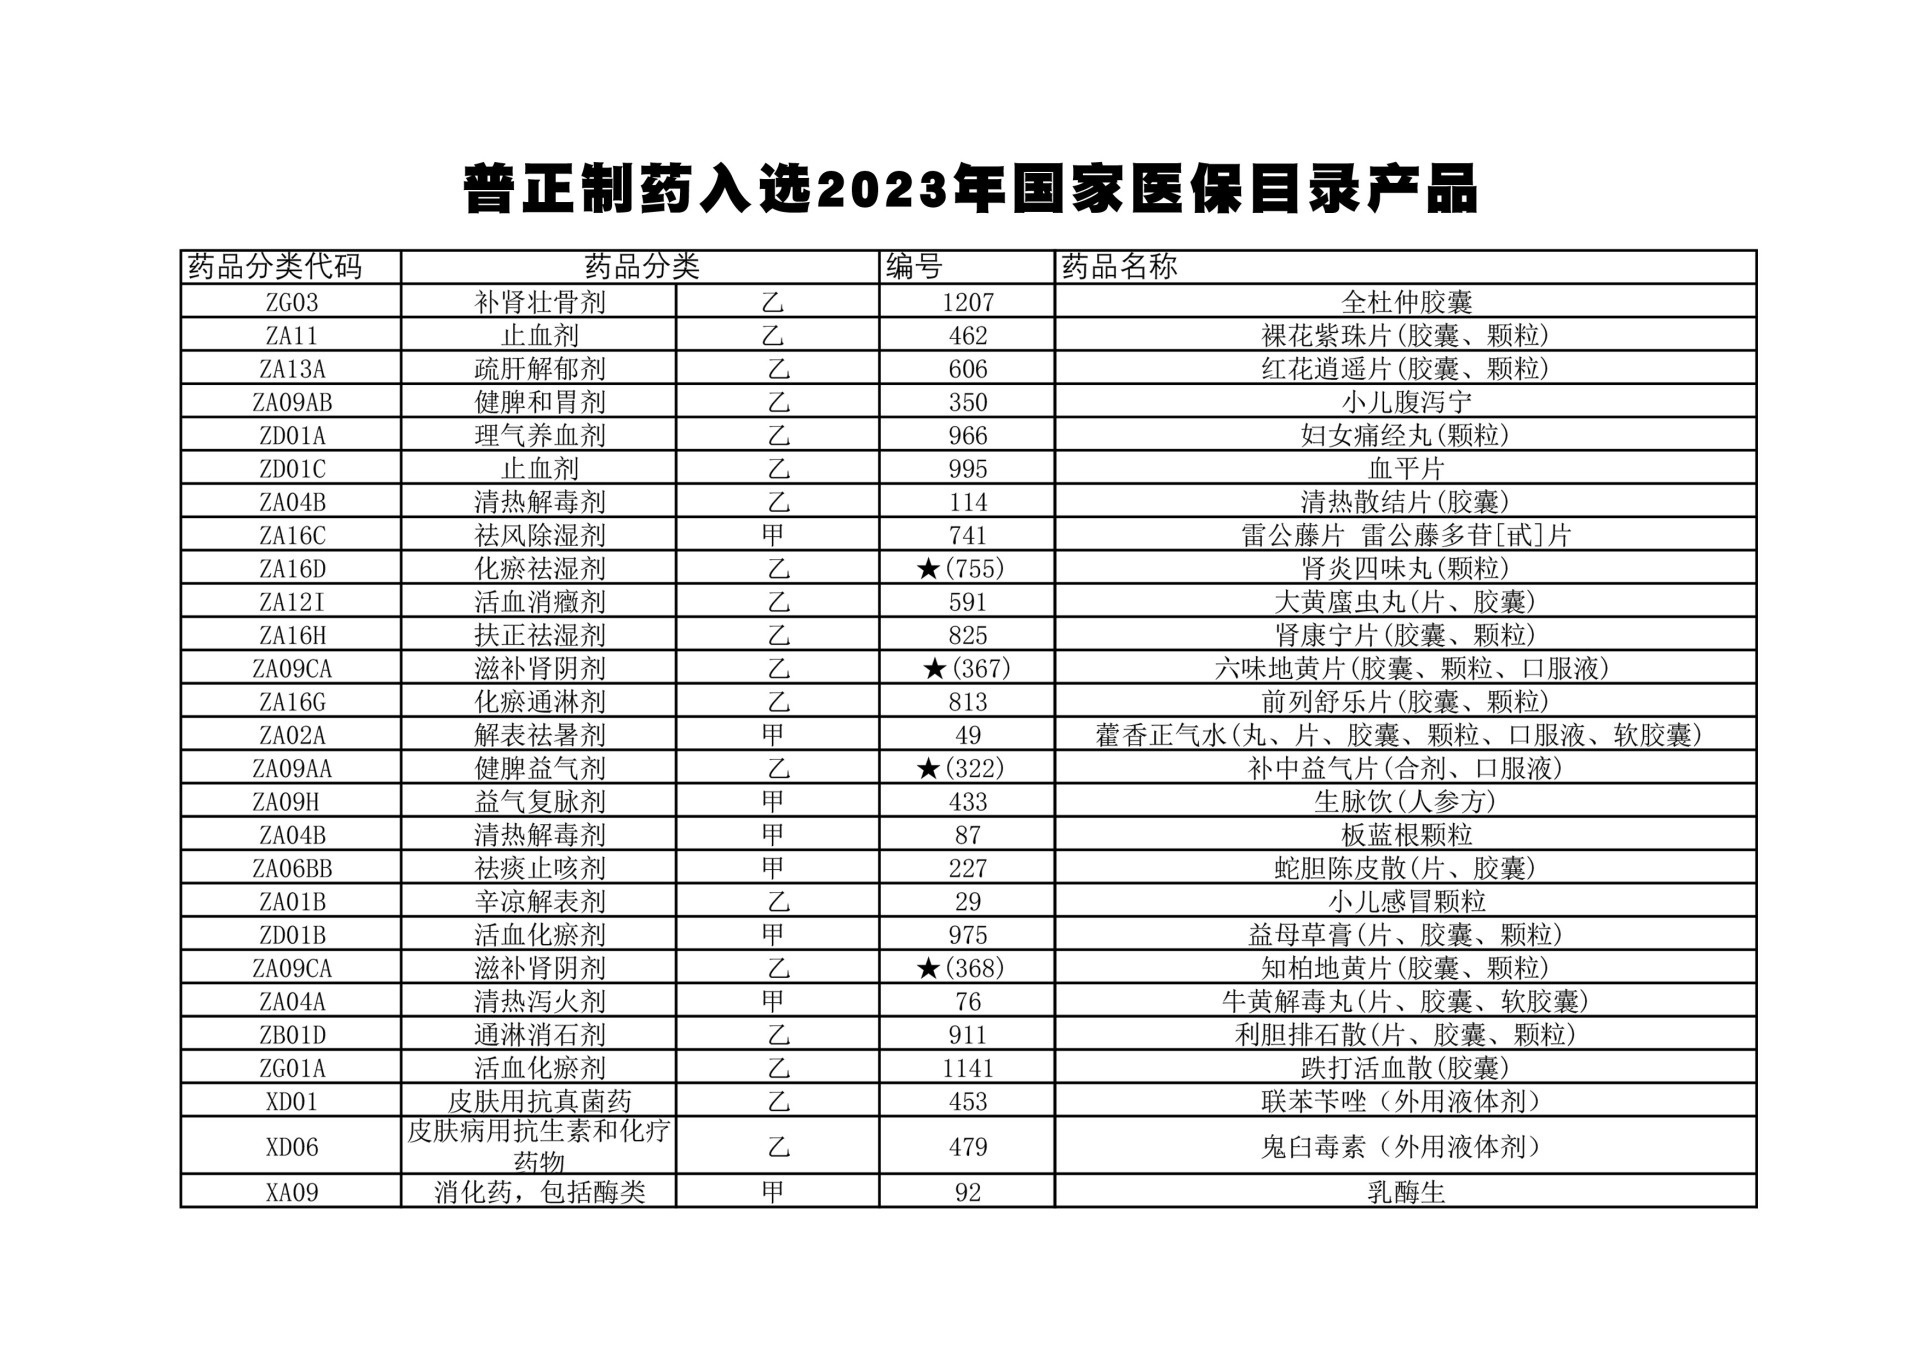 文明江西：普正制药28个产品入选2023年版国家医保目录